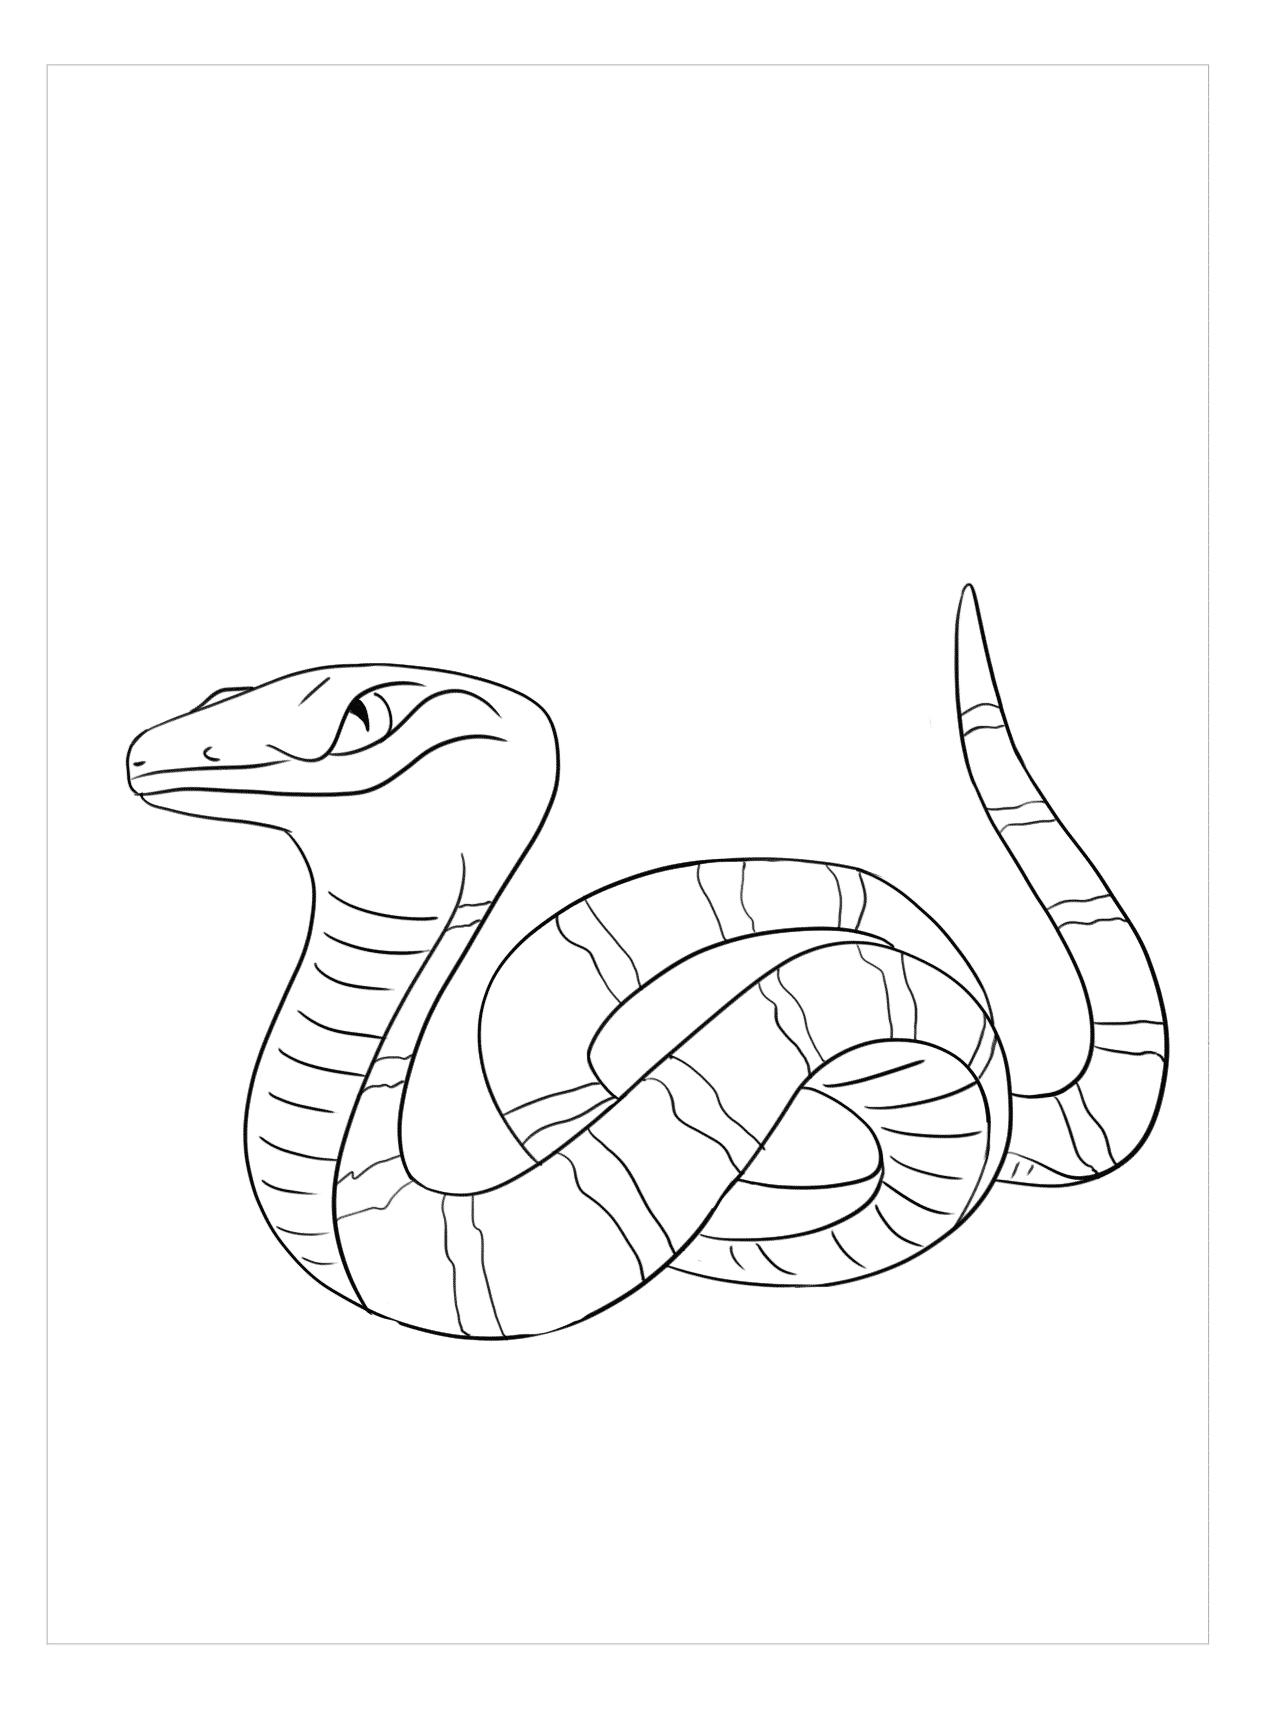 Hãy tìm hiểu về hình ảnh về con rắn trong hình vẽ đầy màu sắc và tinh tế này. Hãy cùng chiêm ngưỡng những chi tiết trên thân hình của con vật này qua hình ảnh độc đáo này.